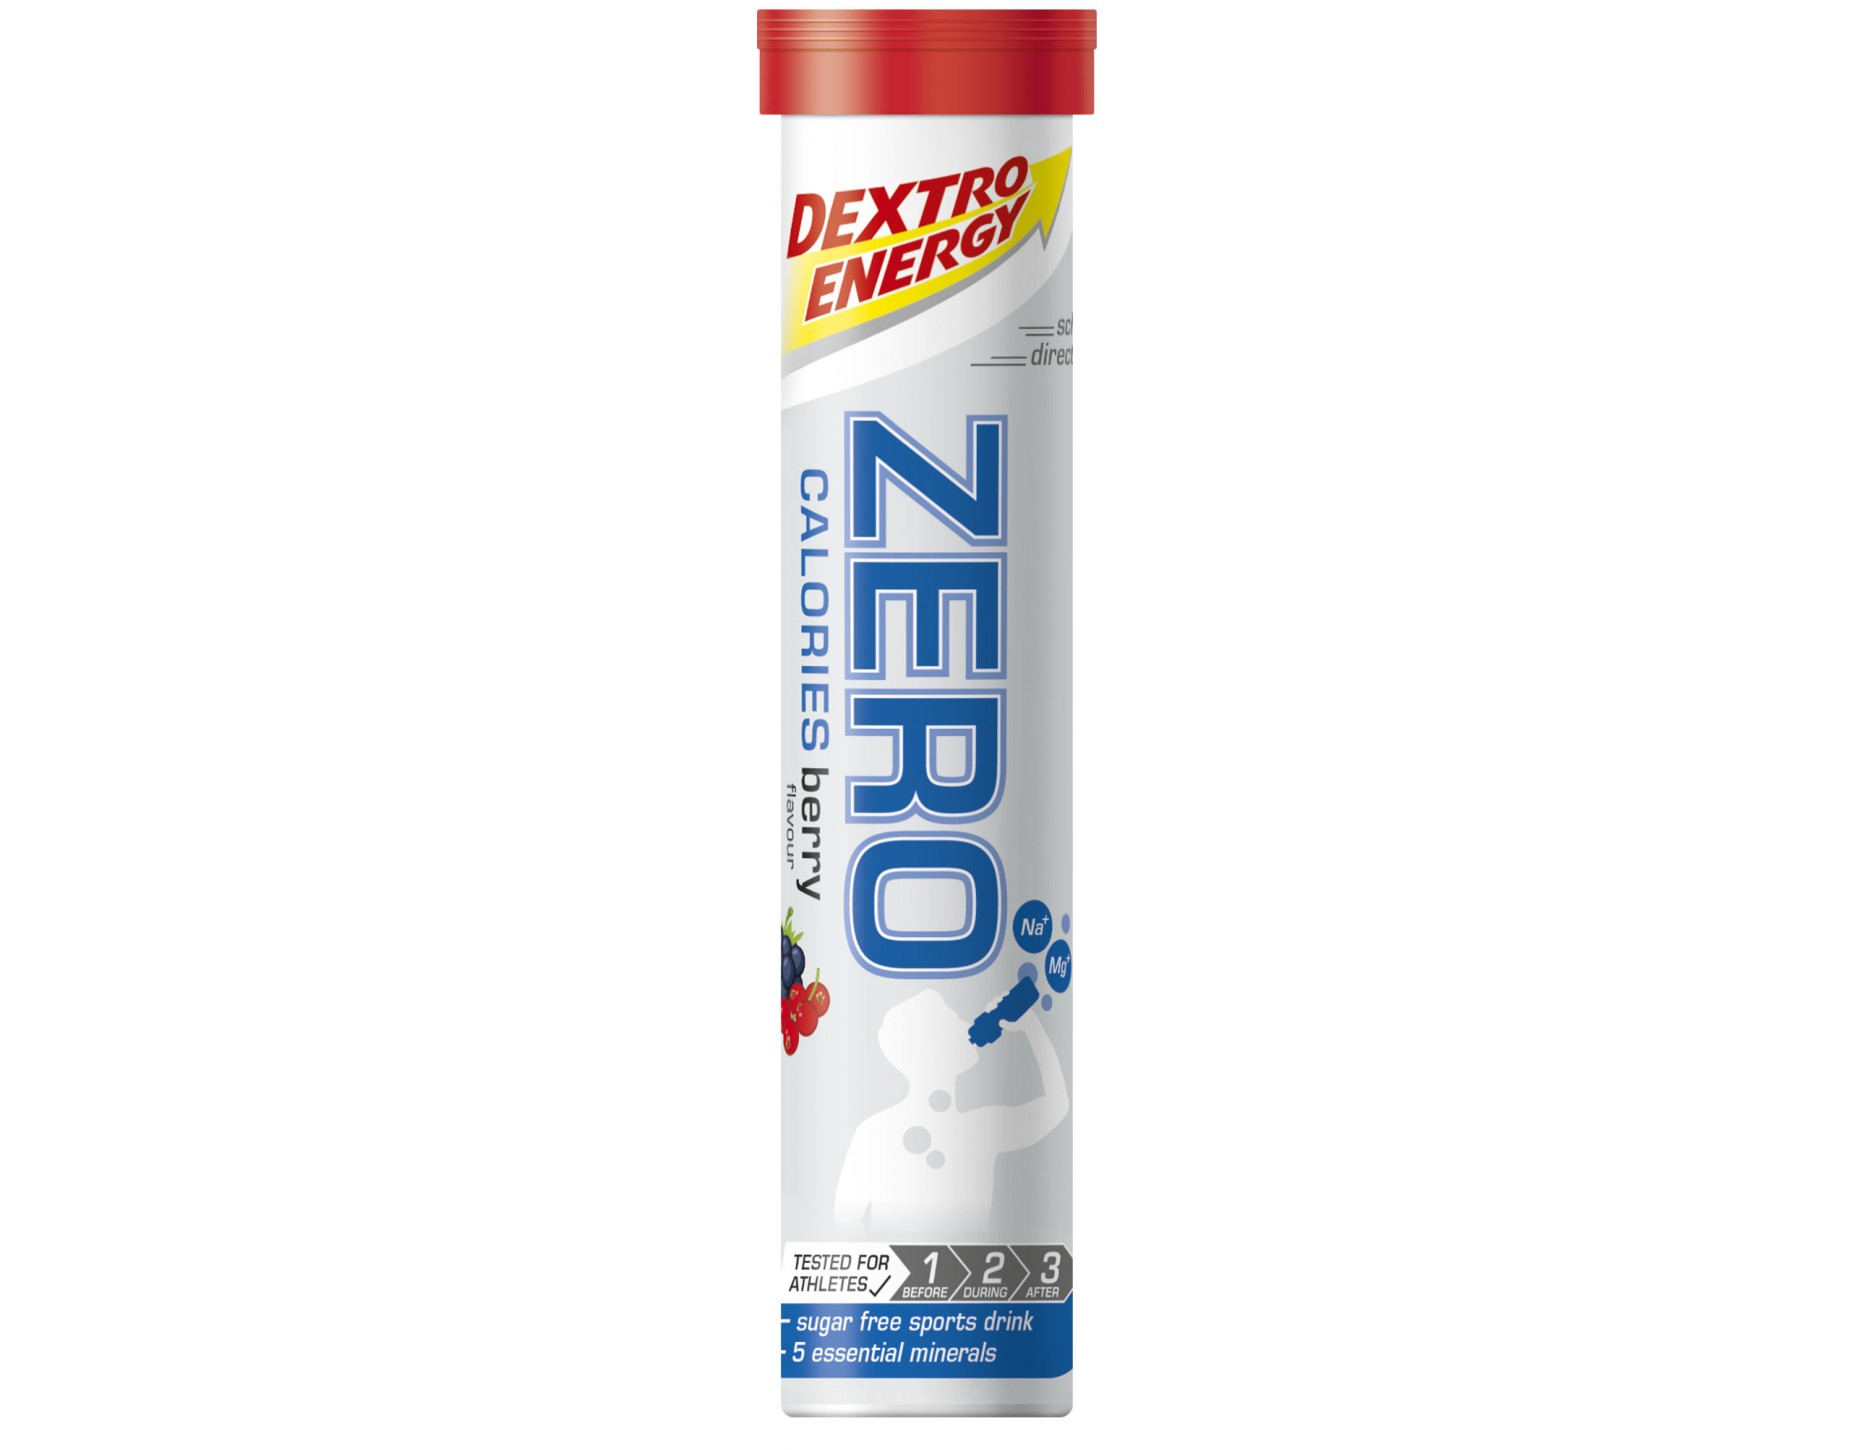 Dextro Energy - Zero calories